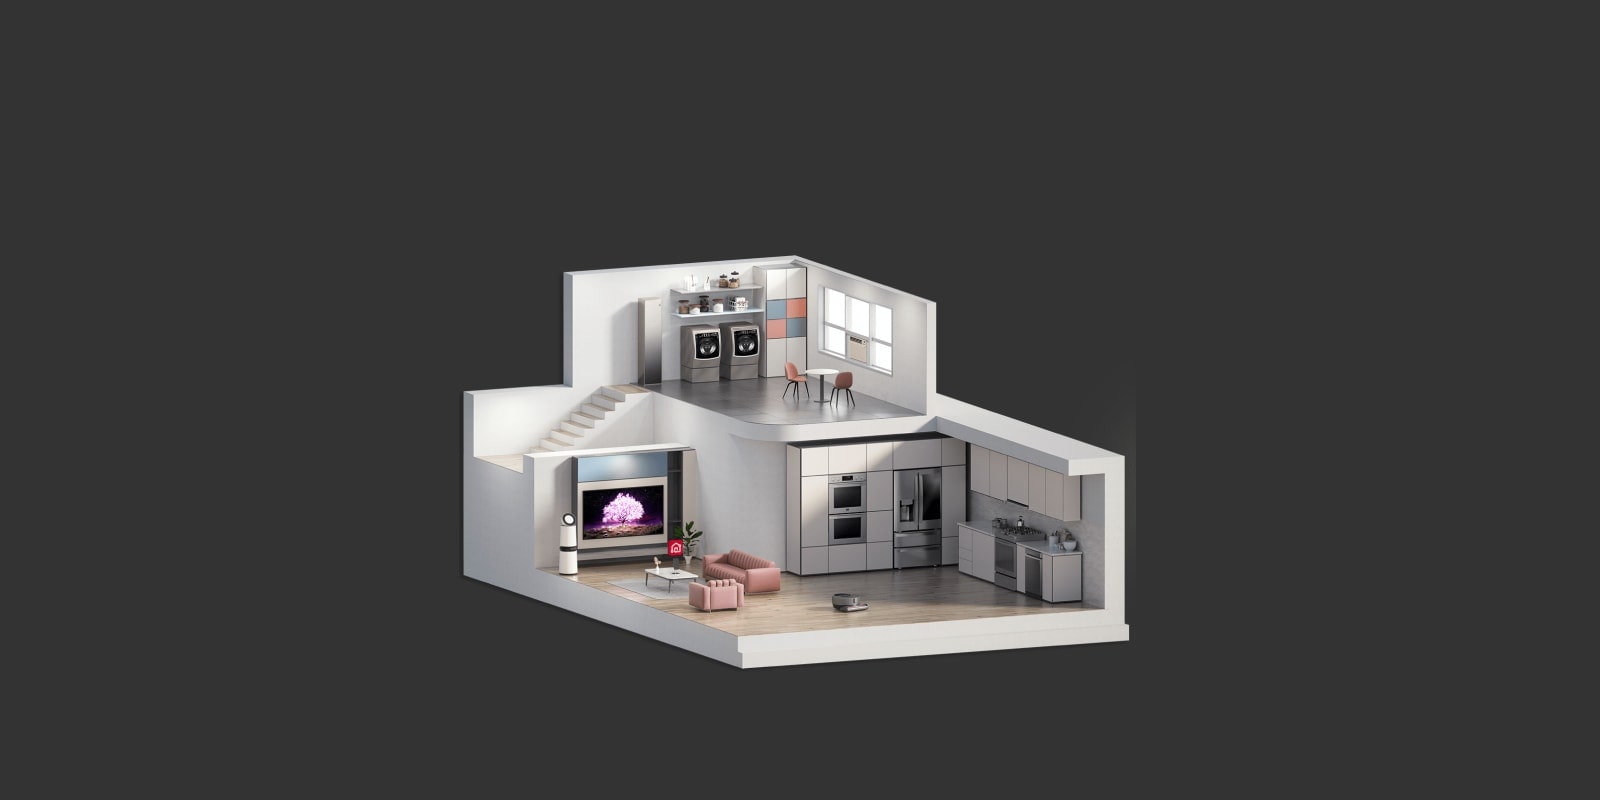 На изображении показан вид в разрезе модели дома с несколькими комнатами.